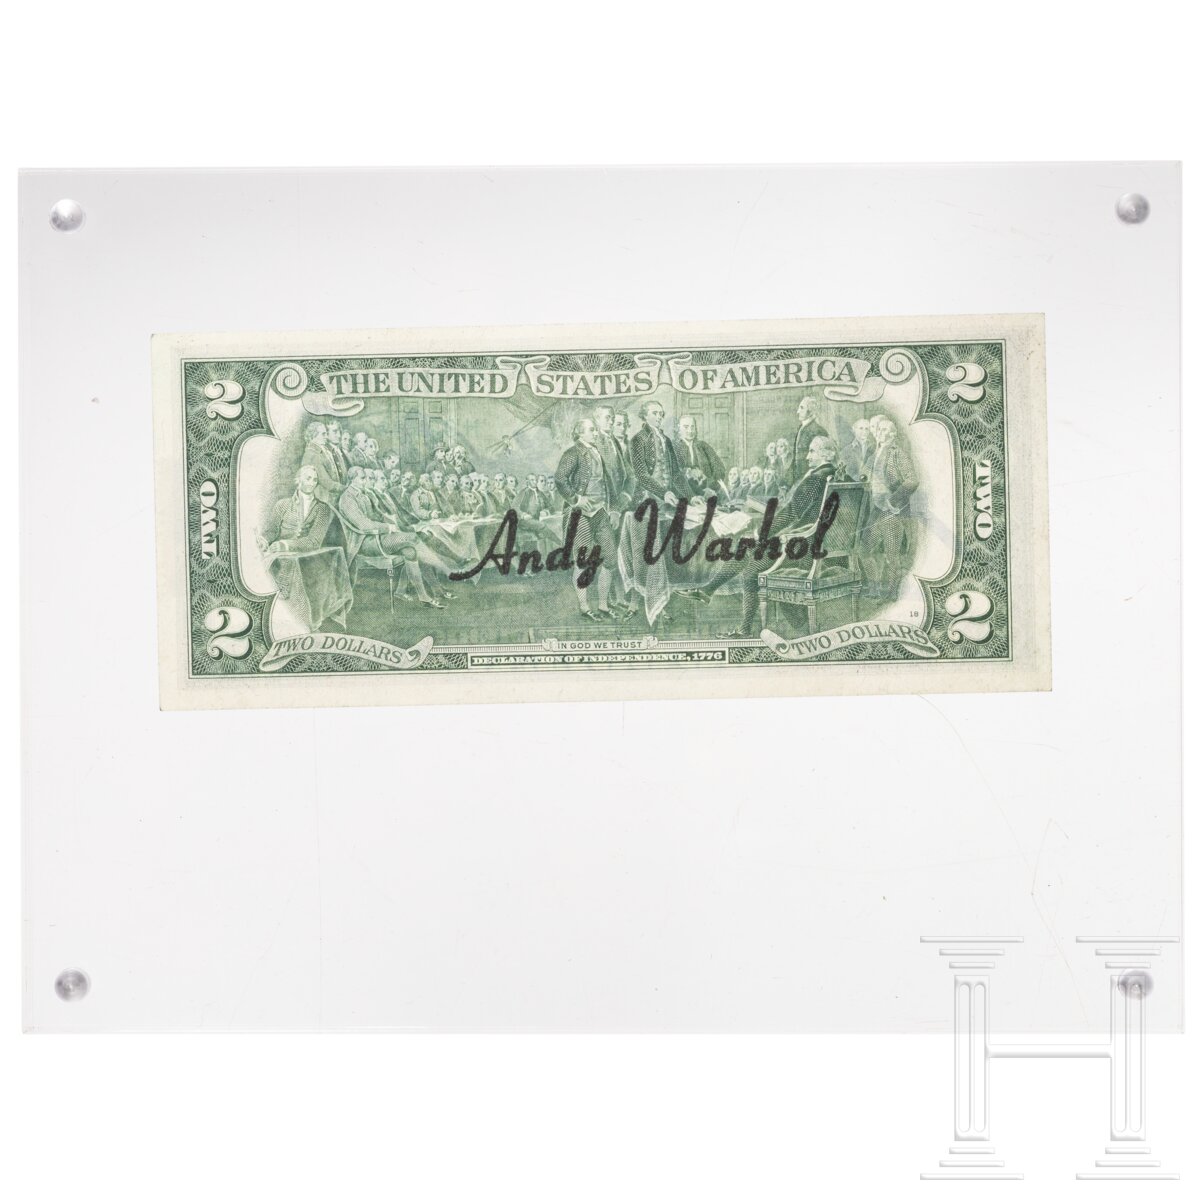 Zwei-Dollar-Schein, signiert "Andy Warhol", 1976 - Image 2 of 3